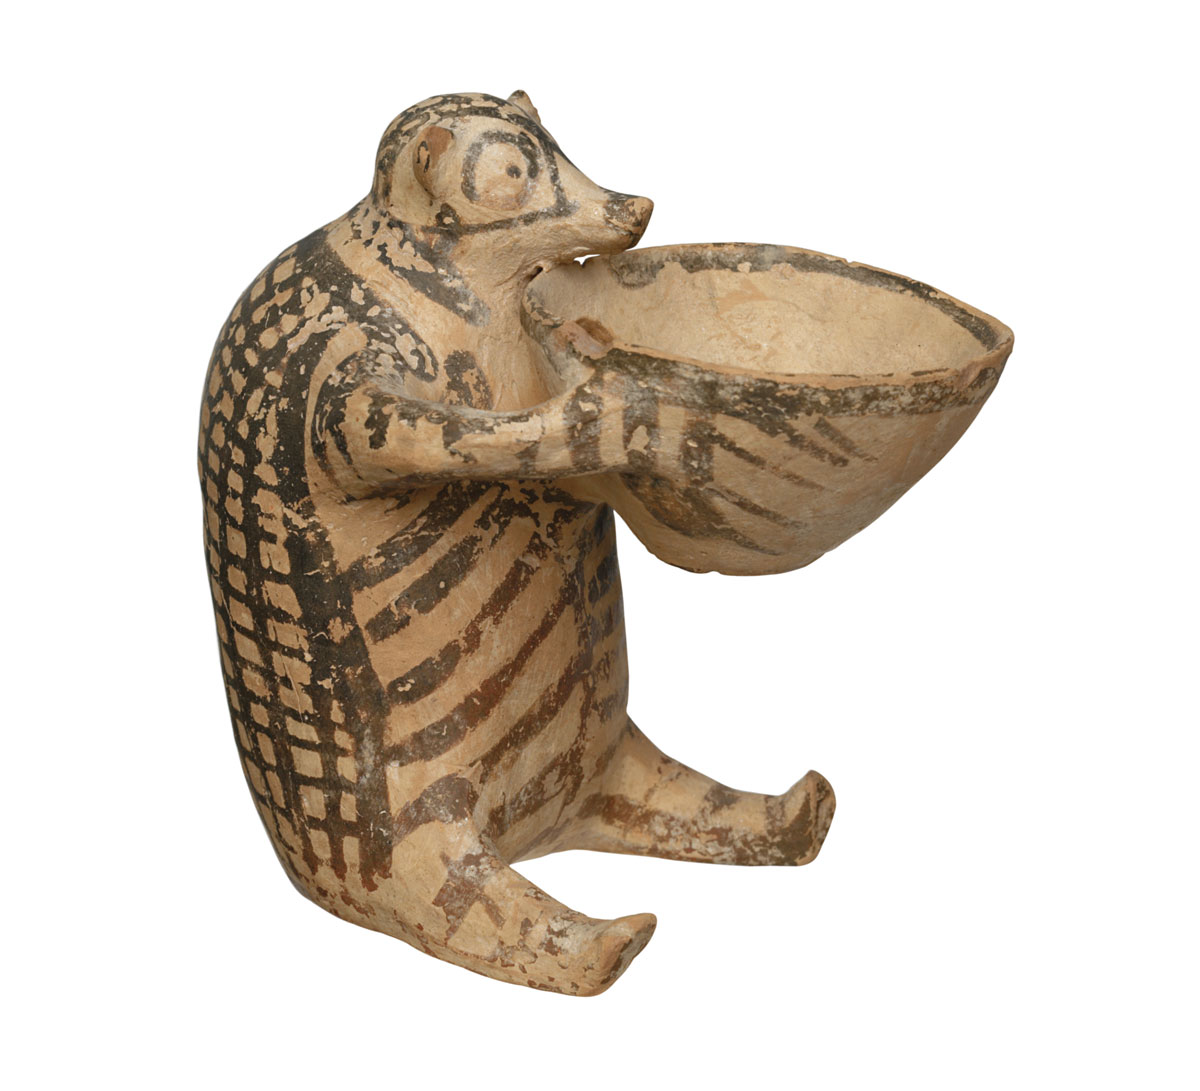 Πλαστικό ζωόμορφο αγγείο που απεικονίζει αρκουδάκι ή σκαντζόχοιρο και κρατάει φιάλη. Χαλανδριανή Σύρου, 2800-2300 π.X. Εθνικό Αρχαιολογικό Μουσείο, Αθήνα.